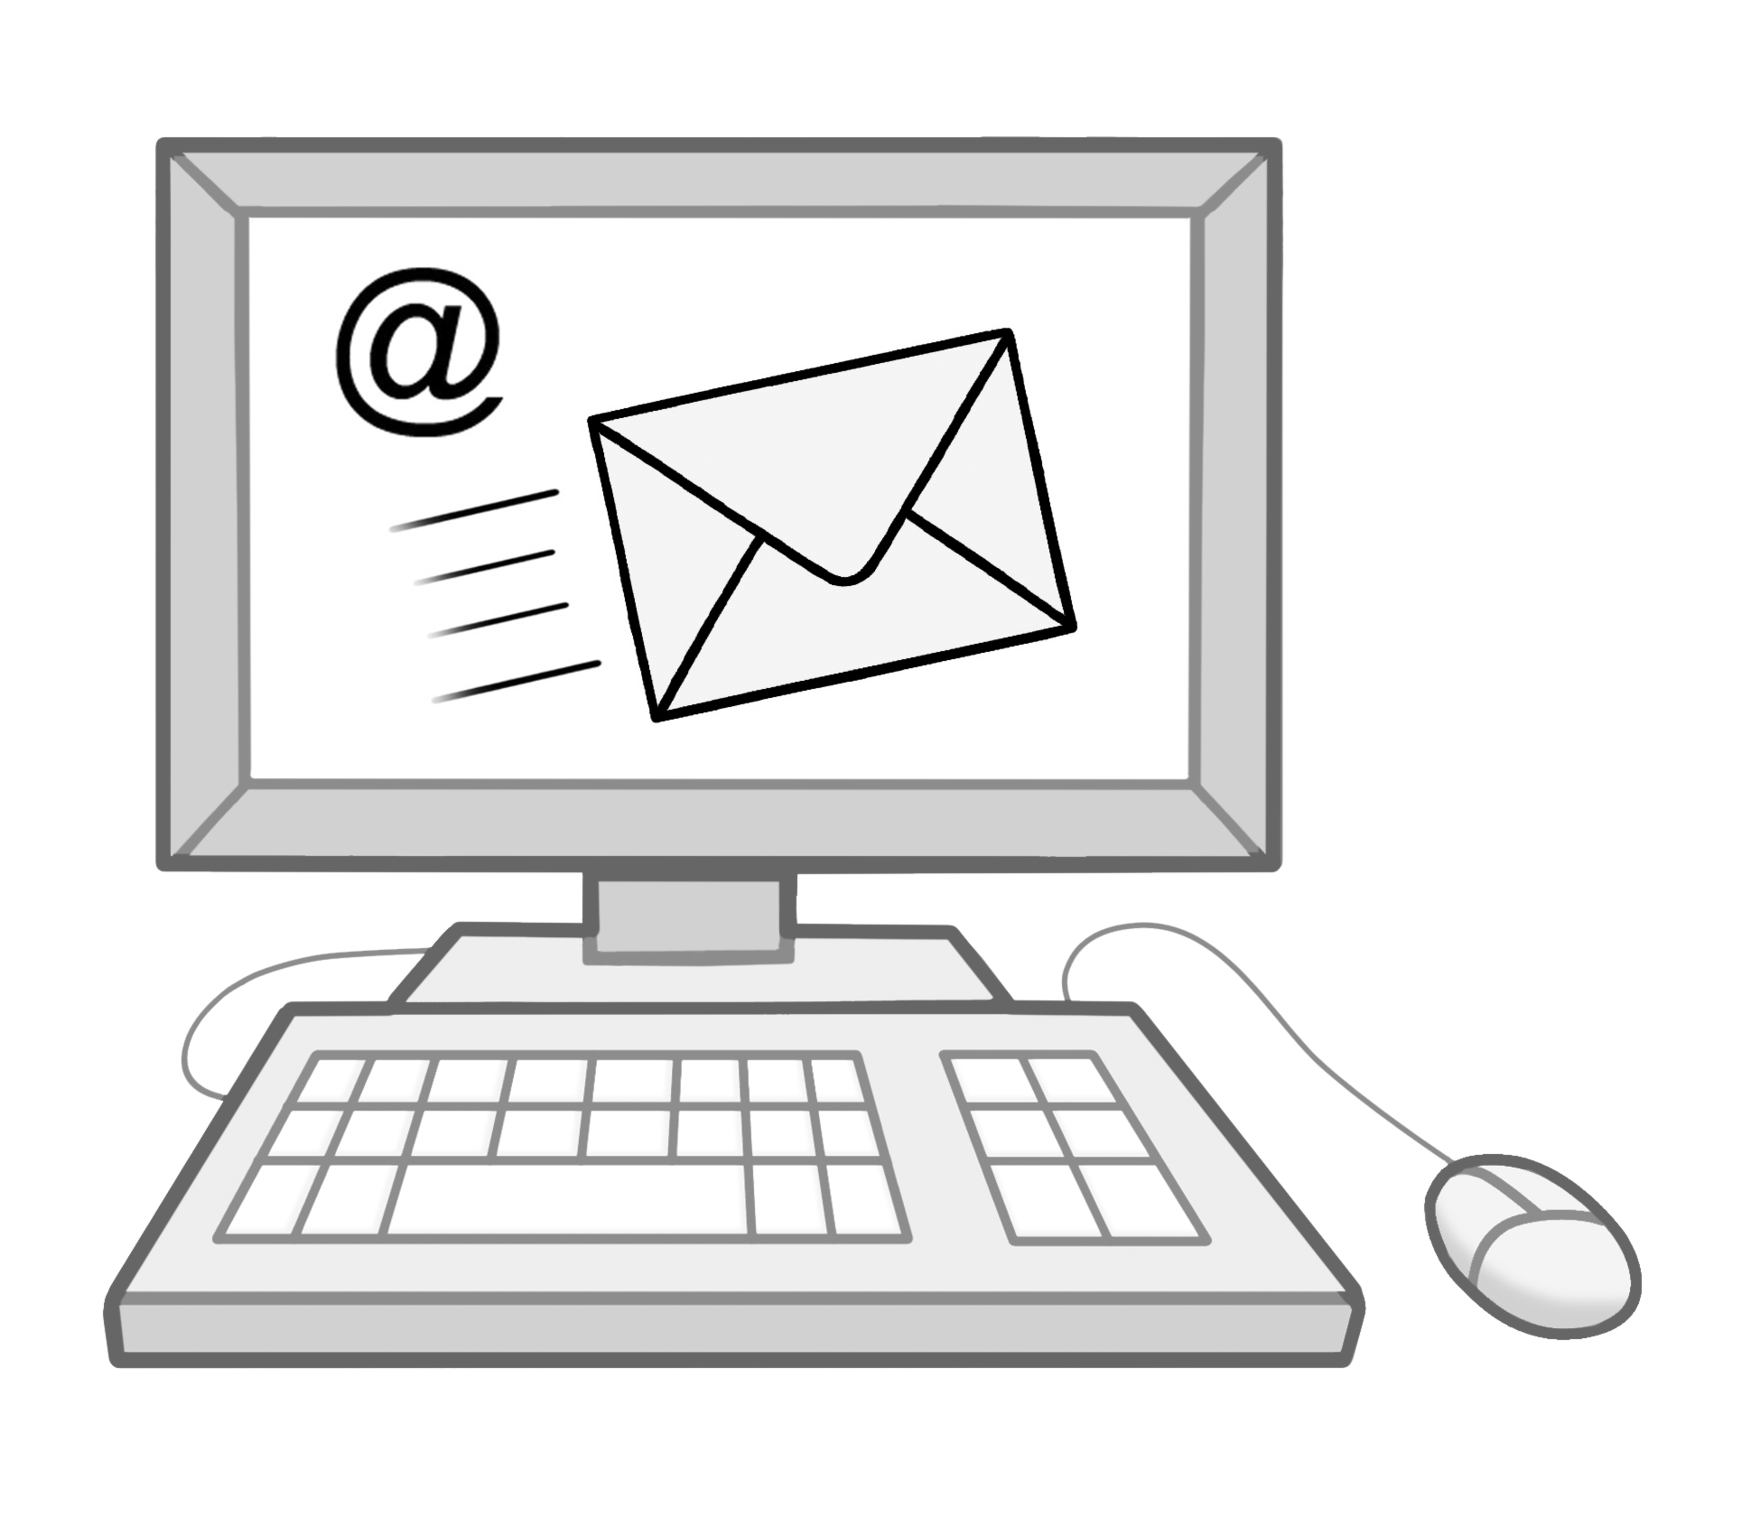 Grafik: Darstellung eines Computers. Auf dem Bildschirm ist eine eingehende Email abgebildet. Außerdem das @-Zeichen